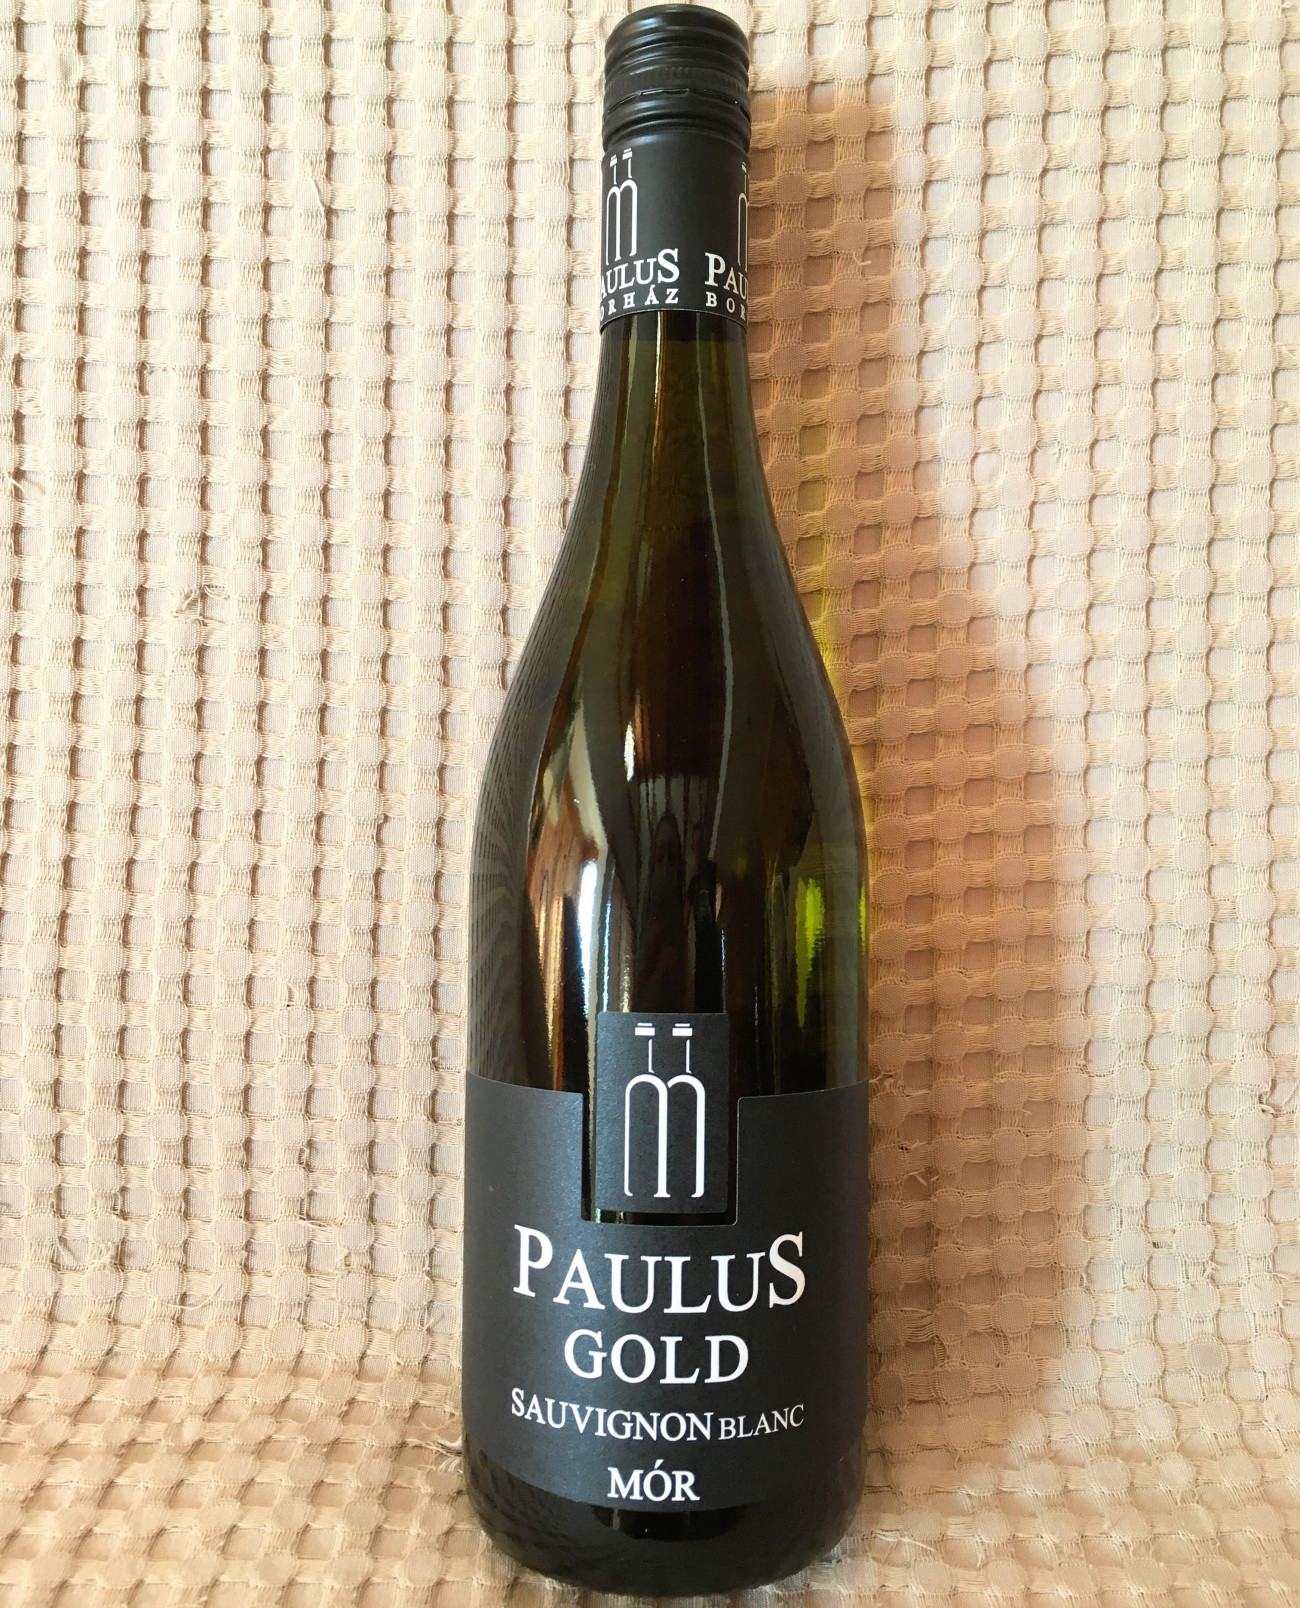 Paulus Gold Sauvignon Blanc